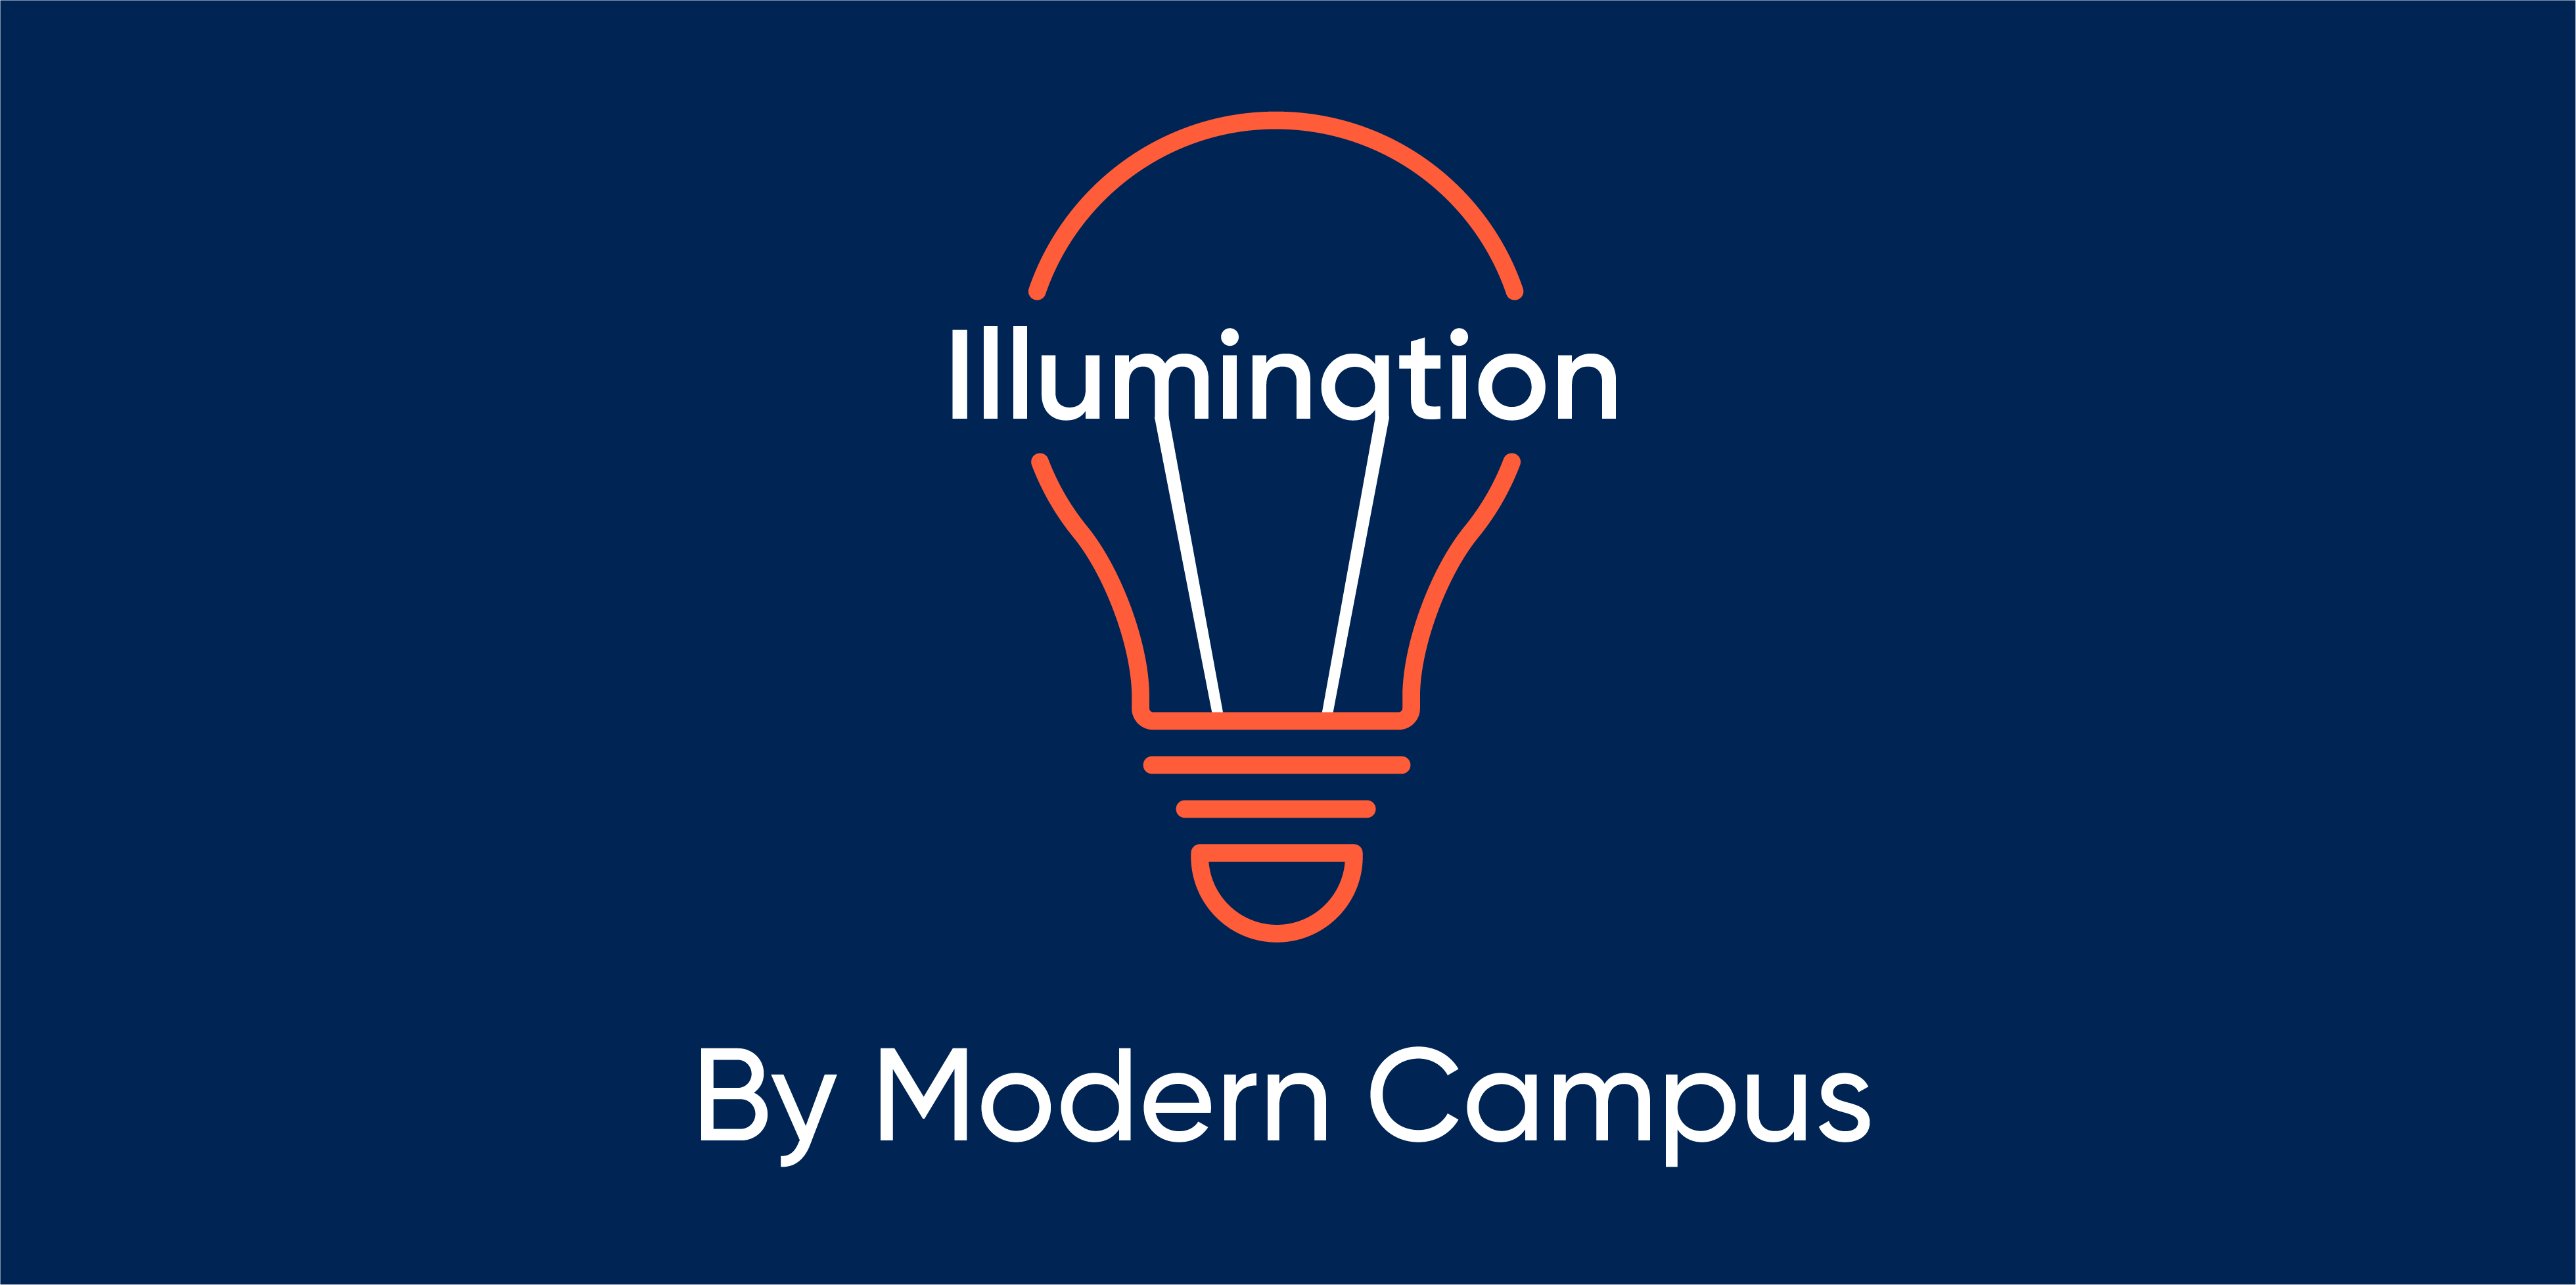 Episode 121: Illumination by Modern Campus